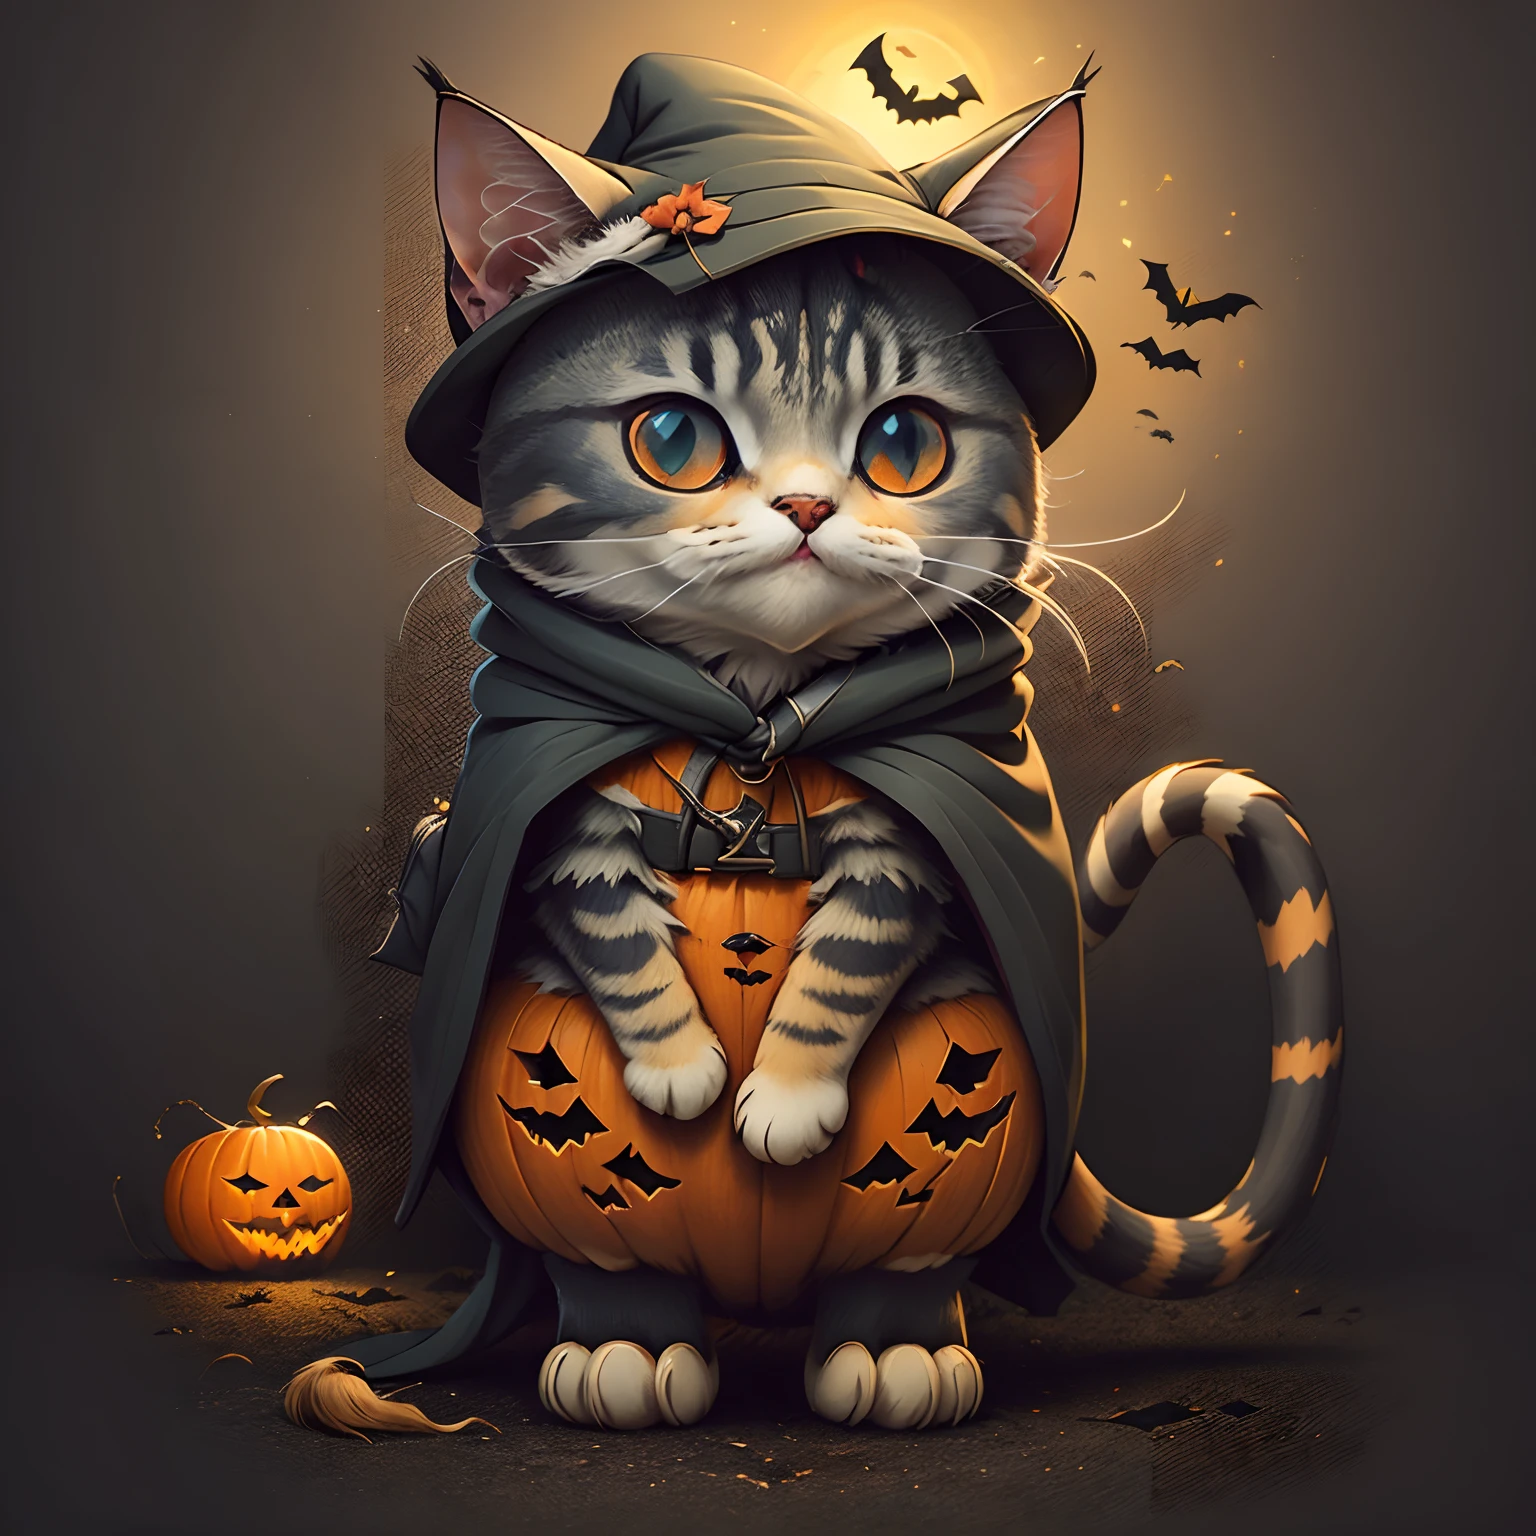 어두운 보라색 망토를 입은 마법사 옷을 입은 고양이의 귀여운 만화 스티커, 스타일 만화, 할로윈